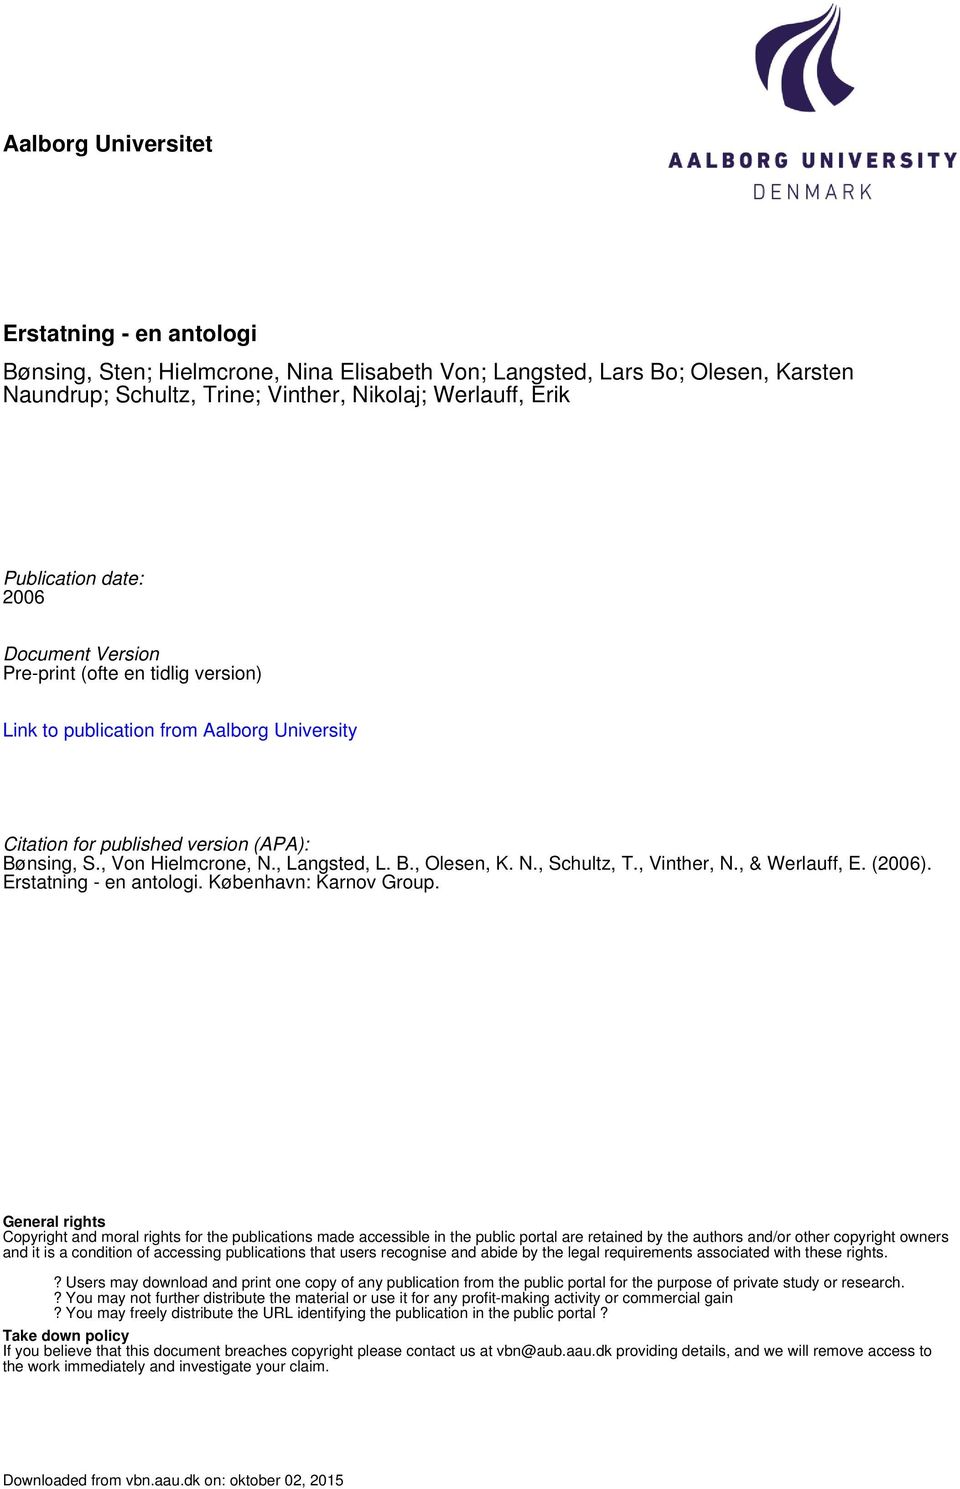 N., Schultz, T., Vinther, N., & Werlauff, E. (2006). Erstatning - en antologi. København: Karnov Group.